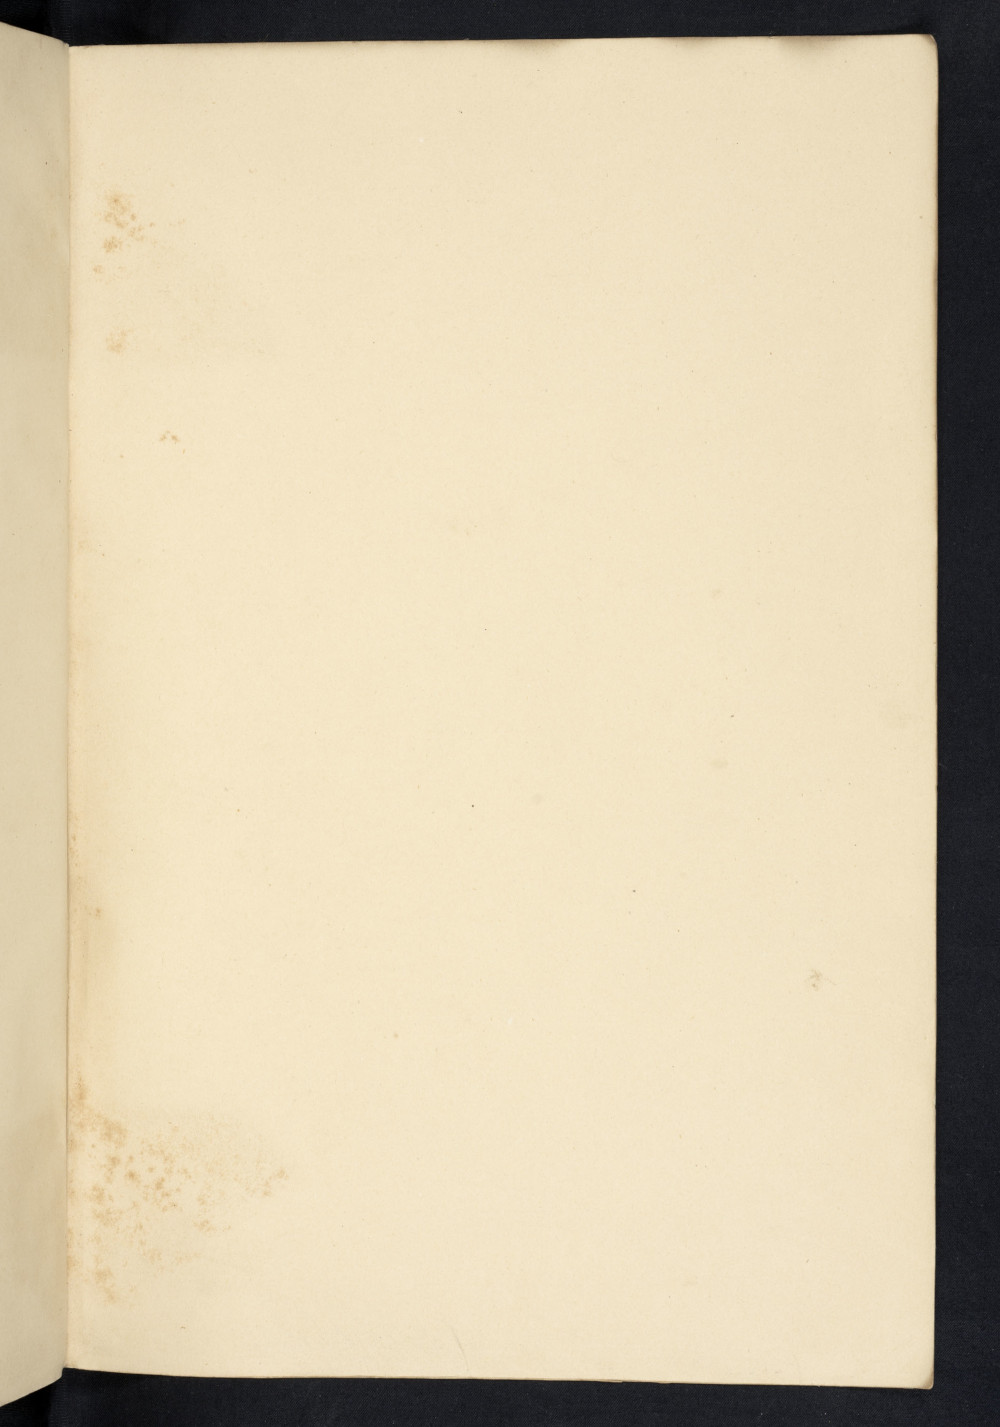 Folio 262 recto